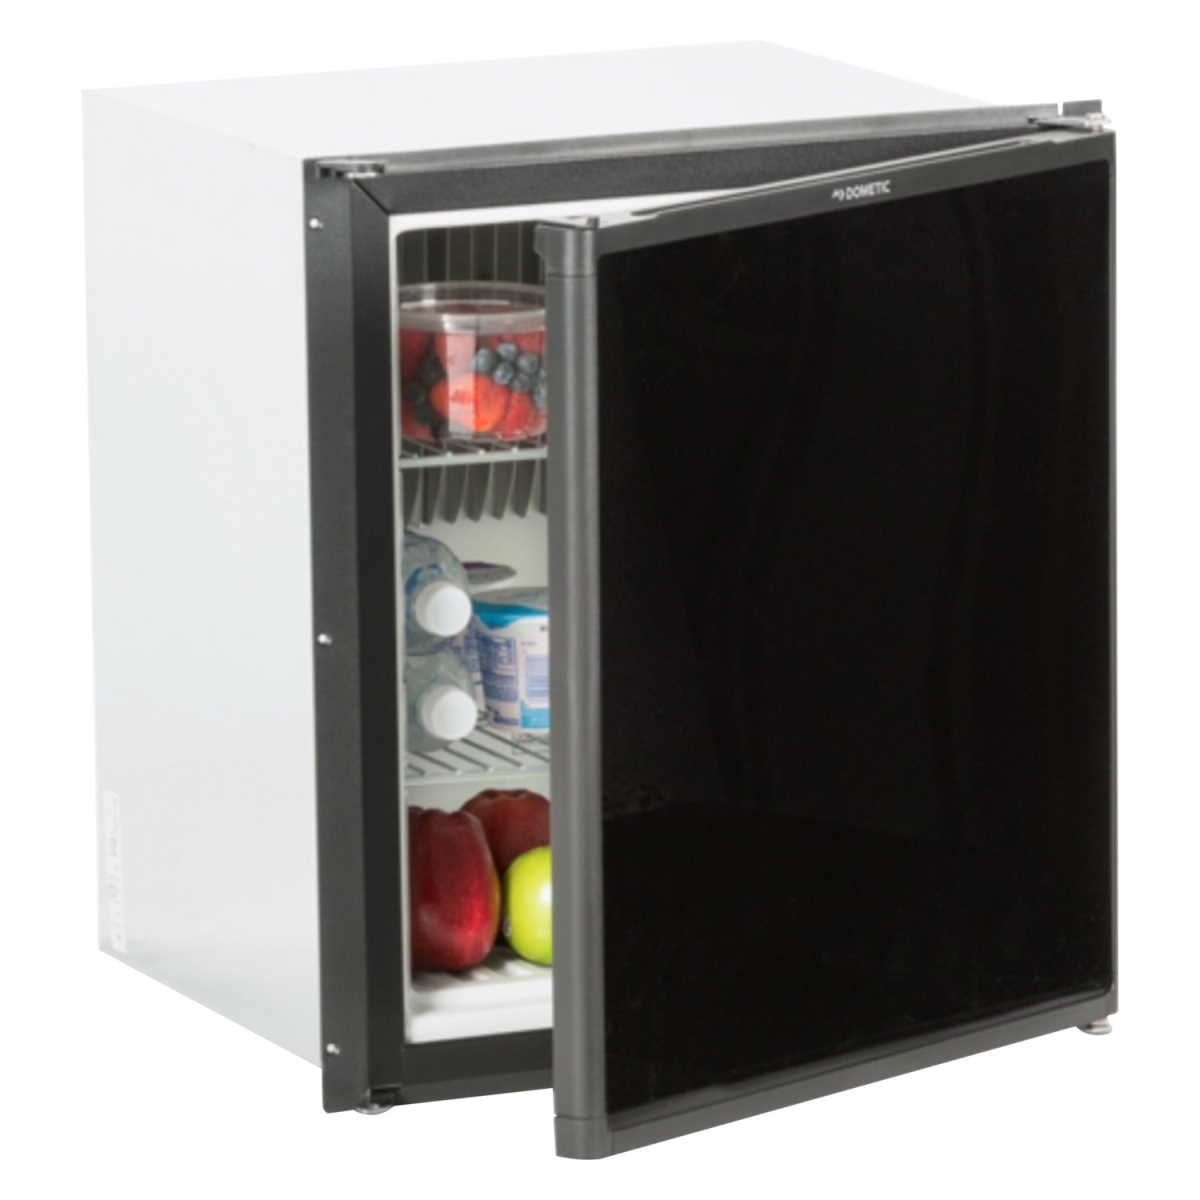 D7e-rm2193rb Compact 3-way Refrigerator, Black & Gray